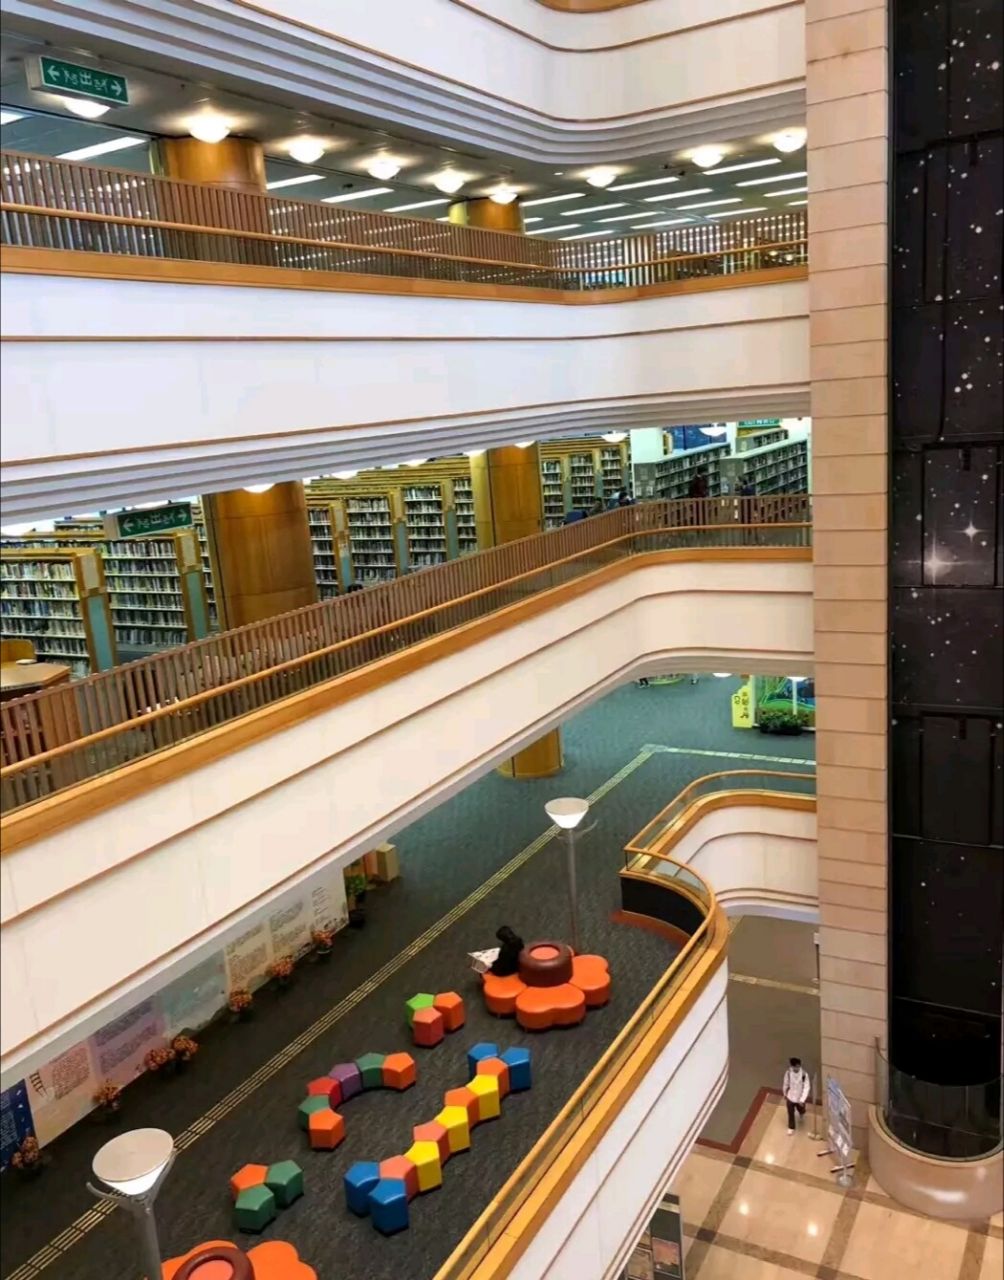 香港中央图书馆